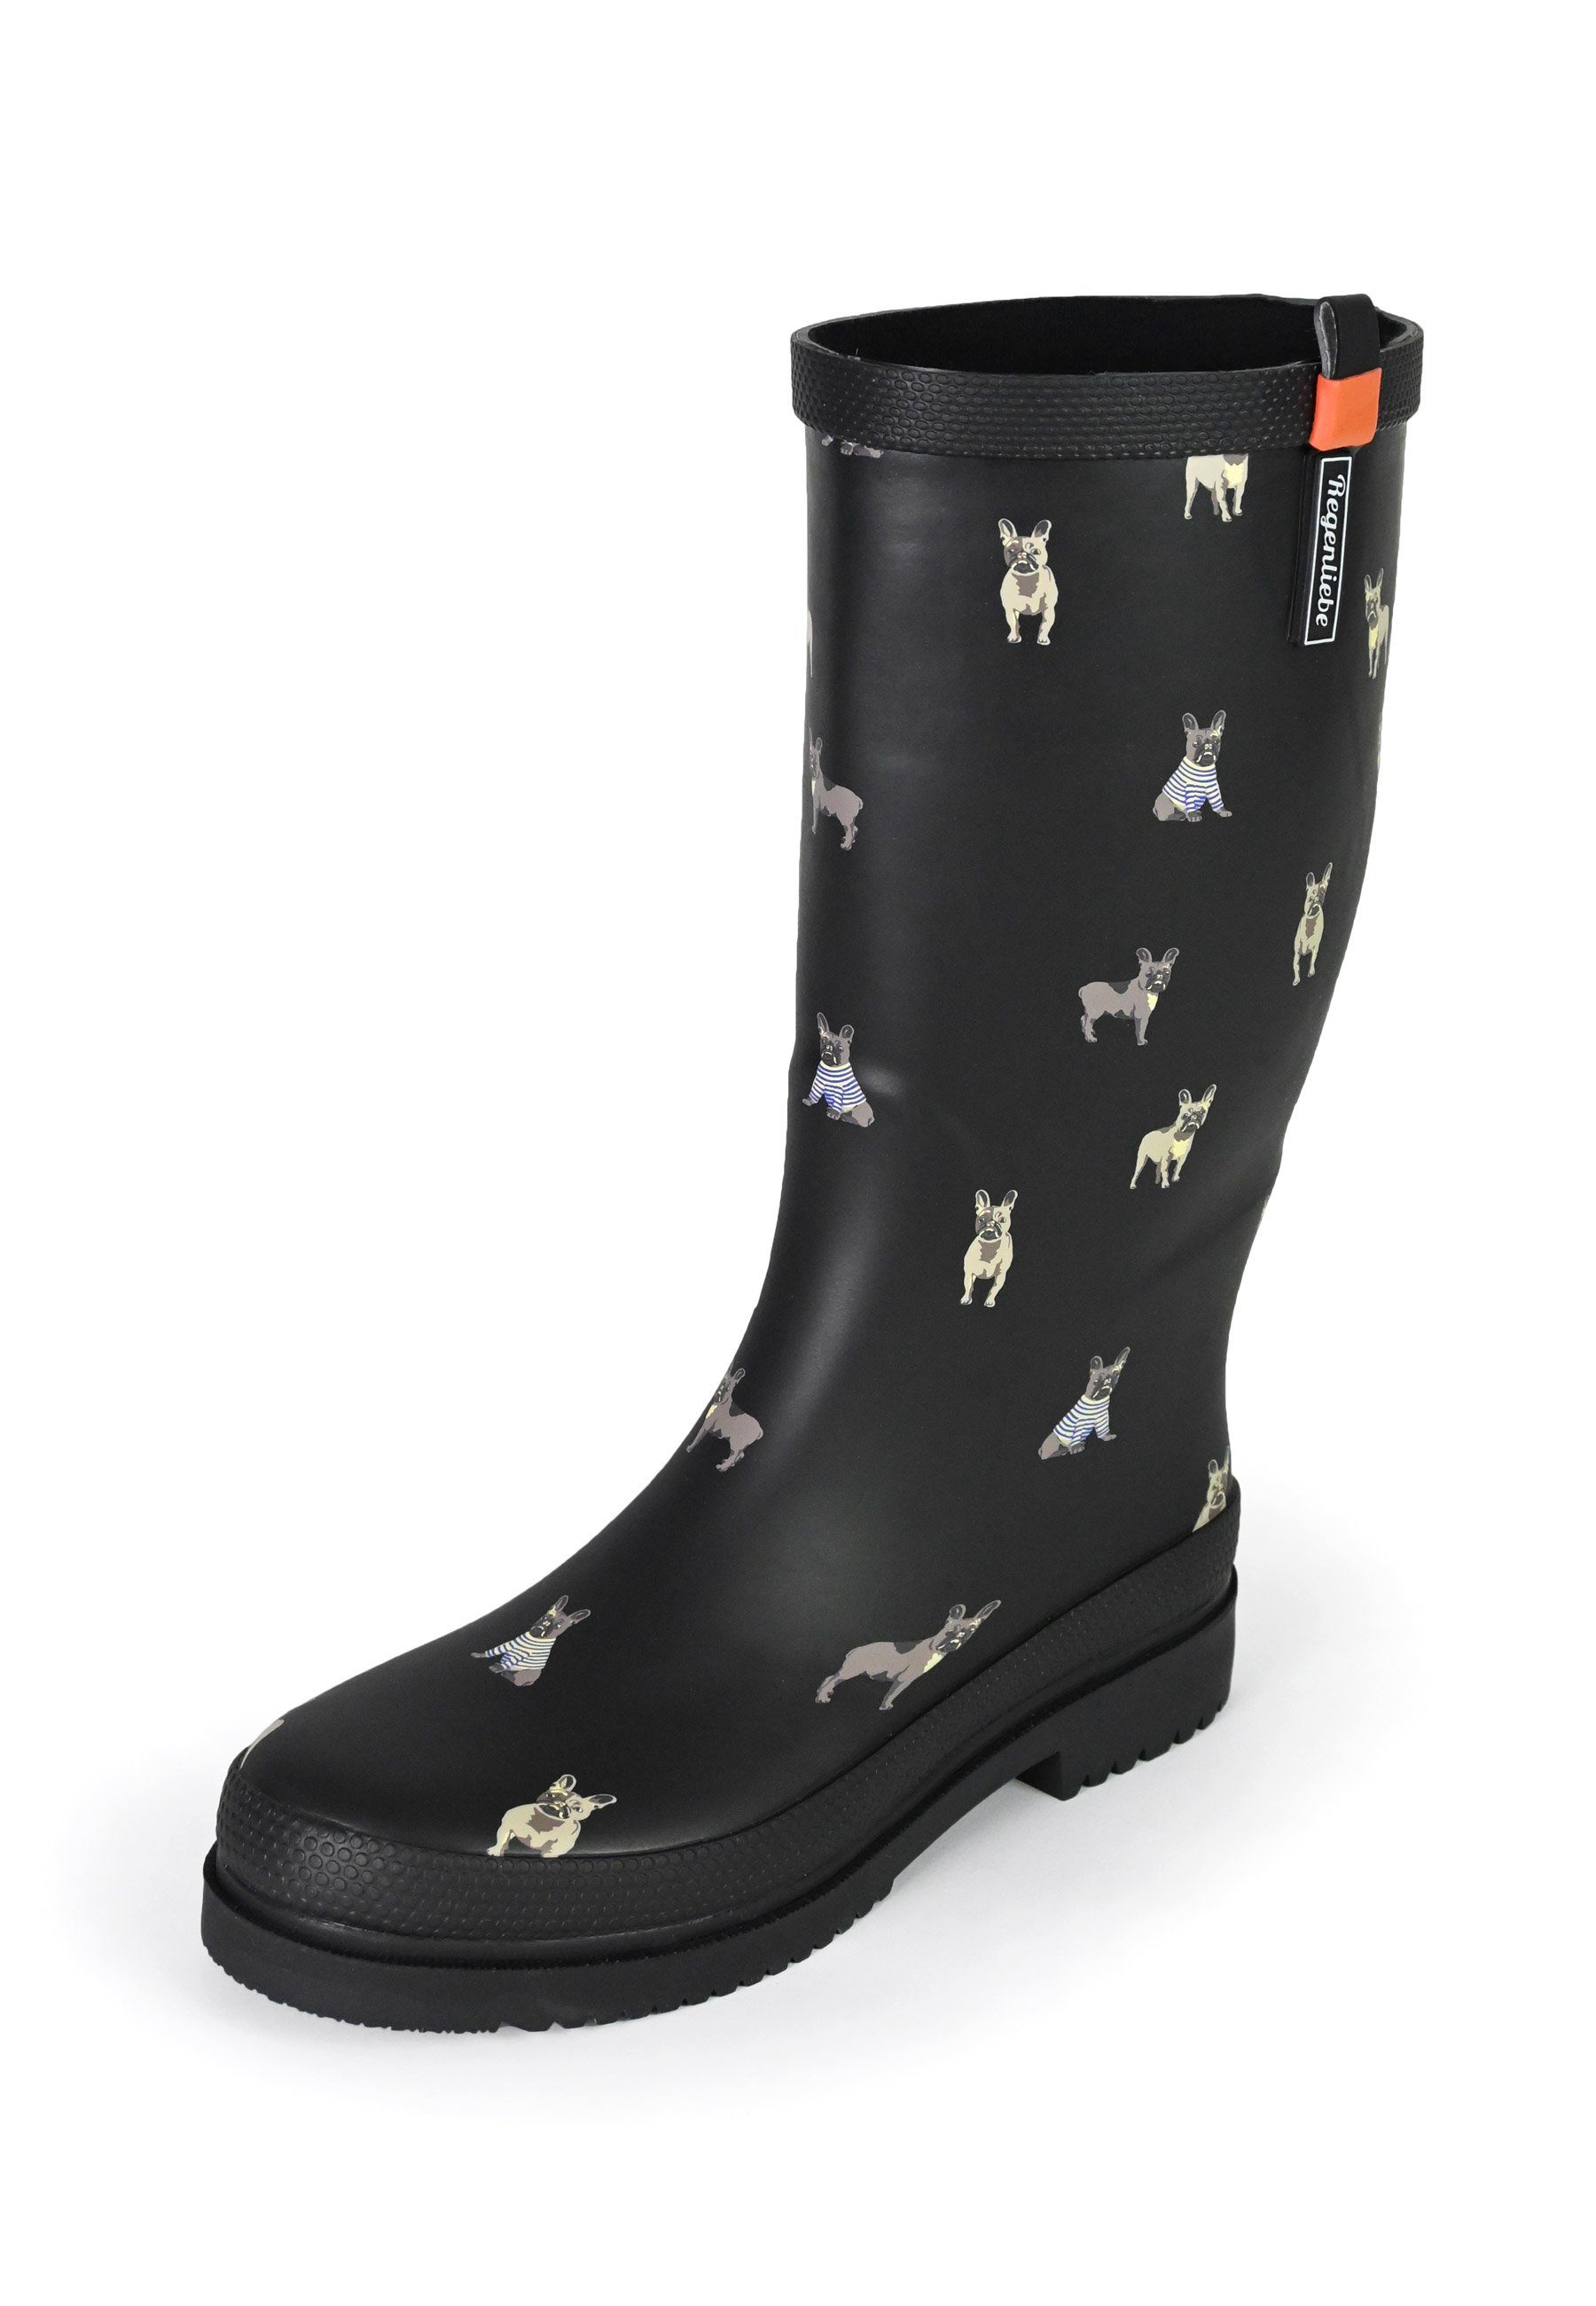 Regenliebe Waldi Mops High Gummistiefel Stiefel Hundemotiv mit Langschaft